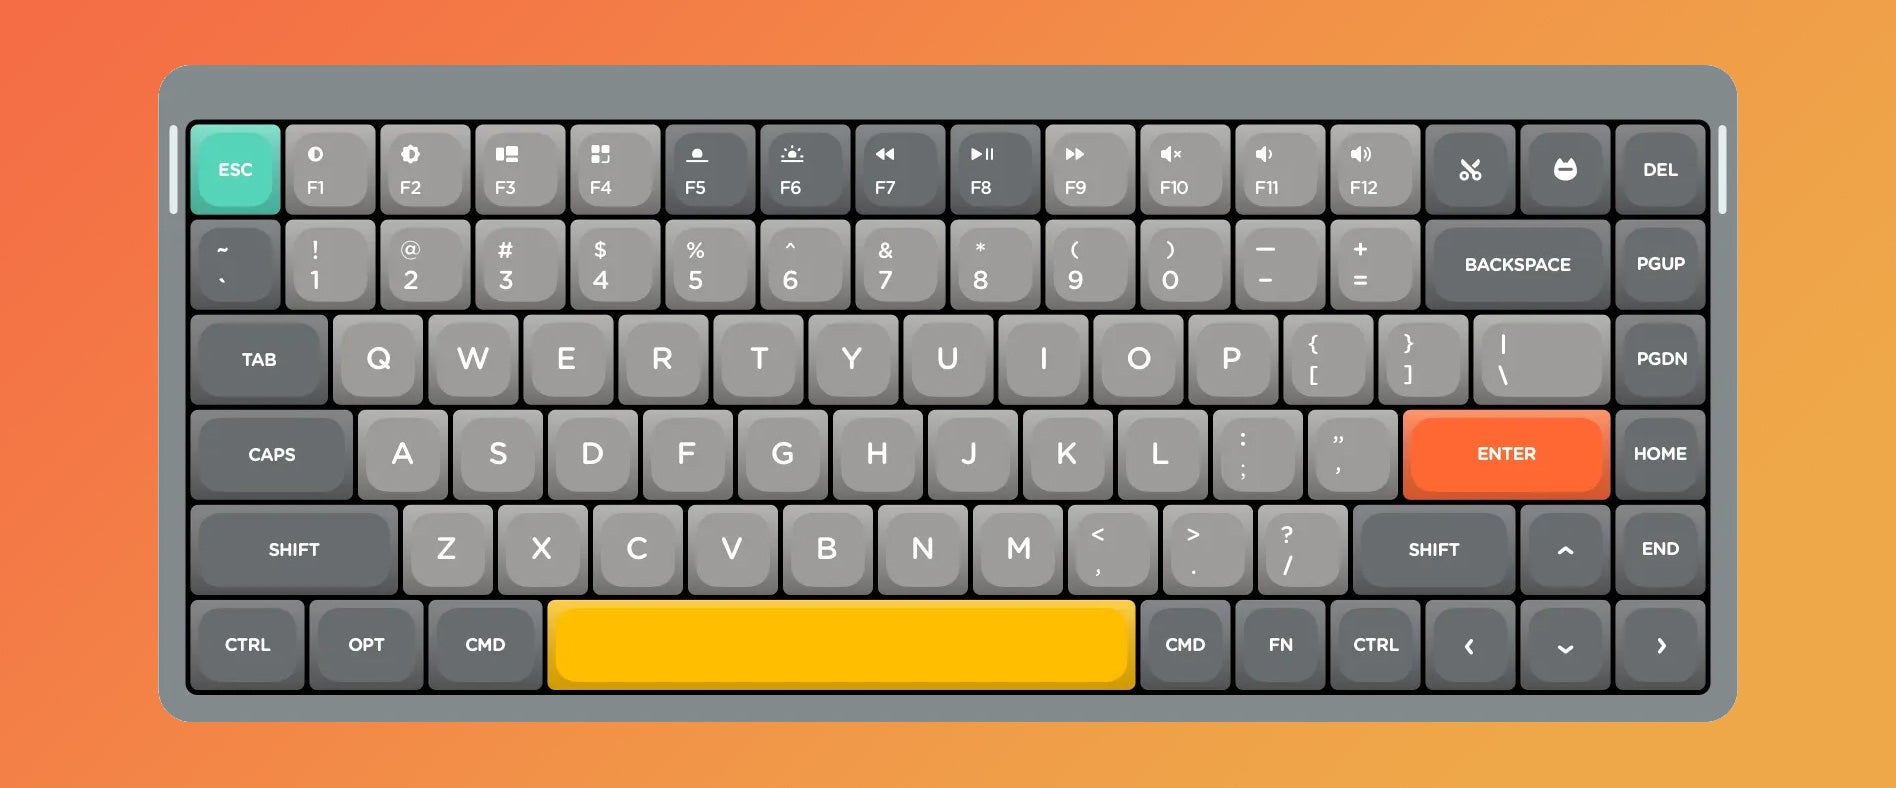 teclado nuphy air75